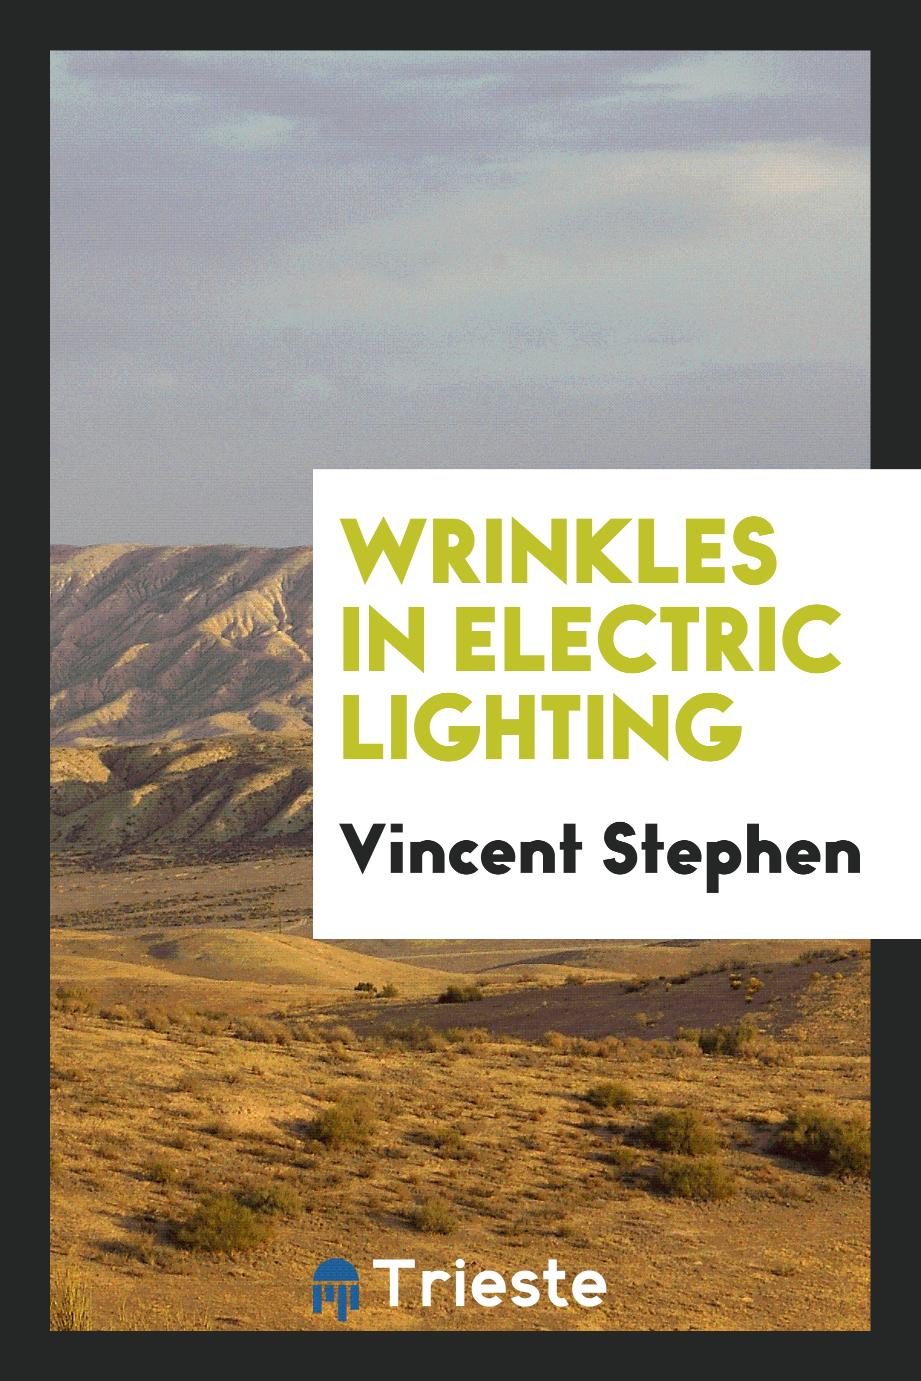 Wrinkles in electric lighting